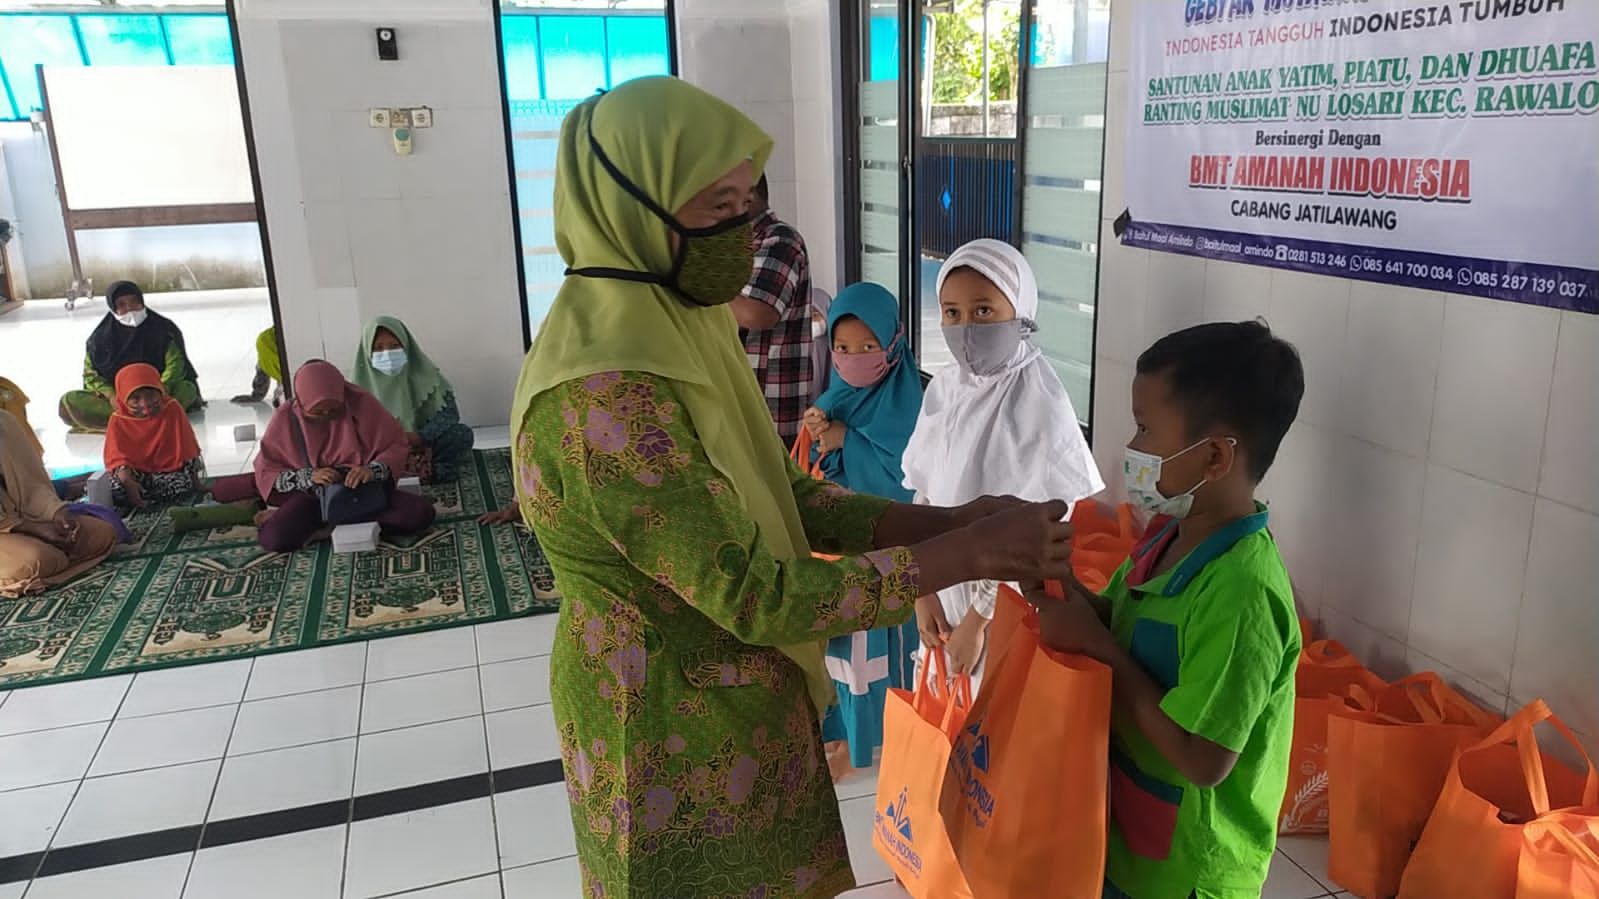 BMT Amanah Indonesia Cabang Jatilawang Bagi Santunan dan Sembako untuk 20 Anak Yatim di Desa Losari, Rawalo, 19 Agustus 2021. / Foto: Istimewa